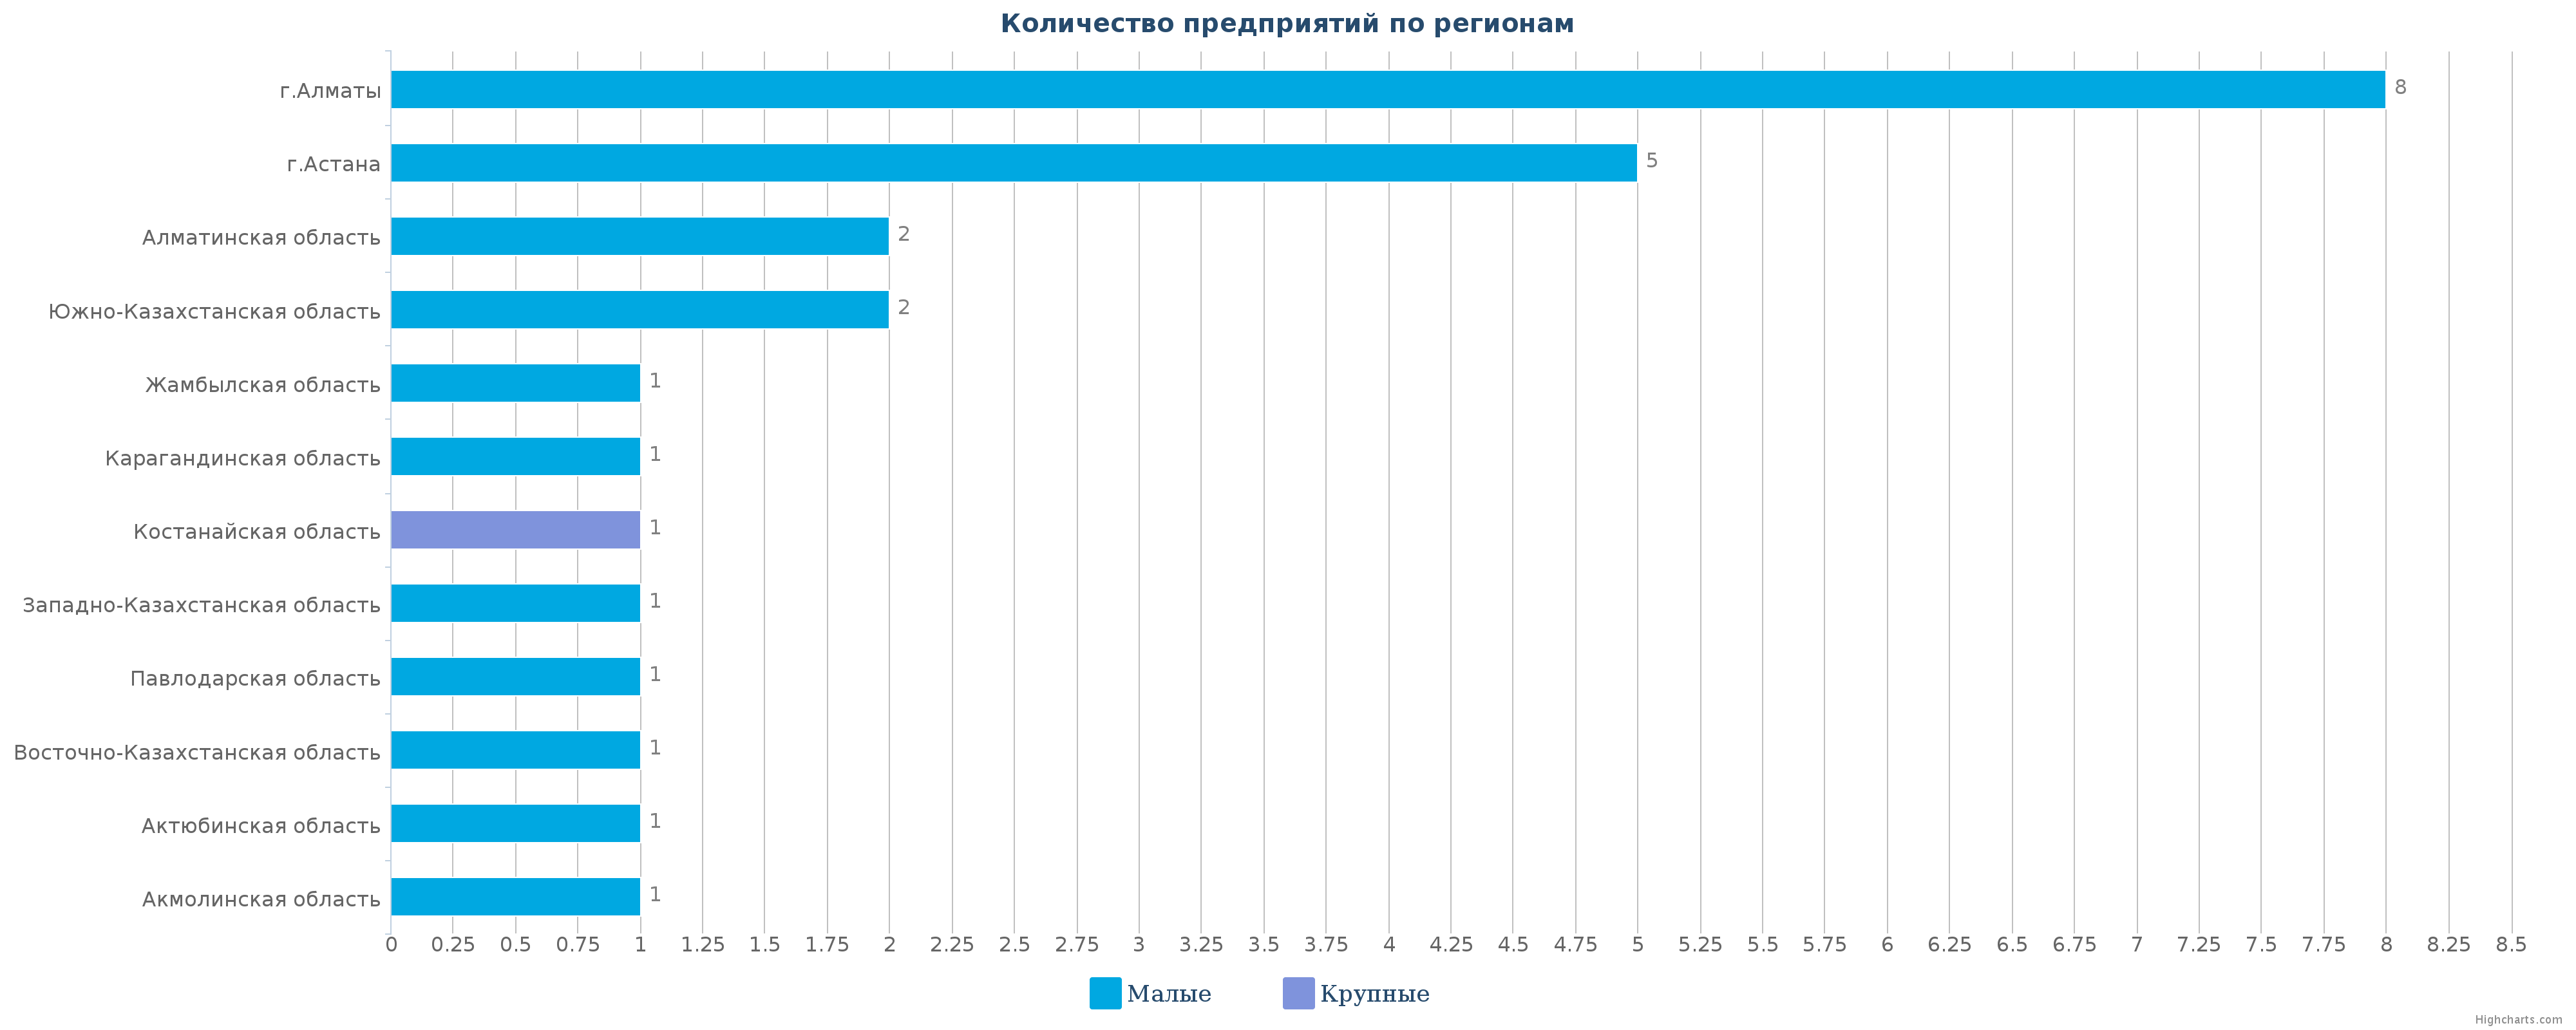 Количество новых производственных организаций по регионам Казахстана